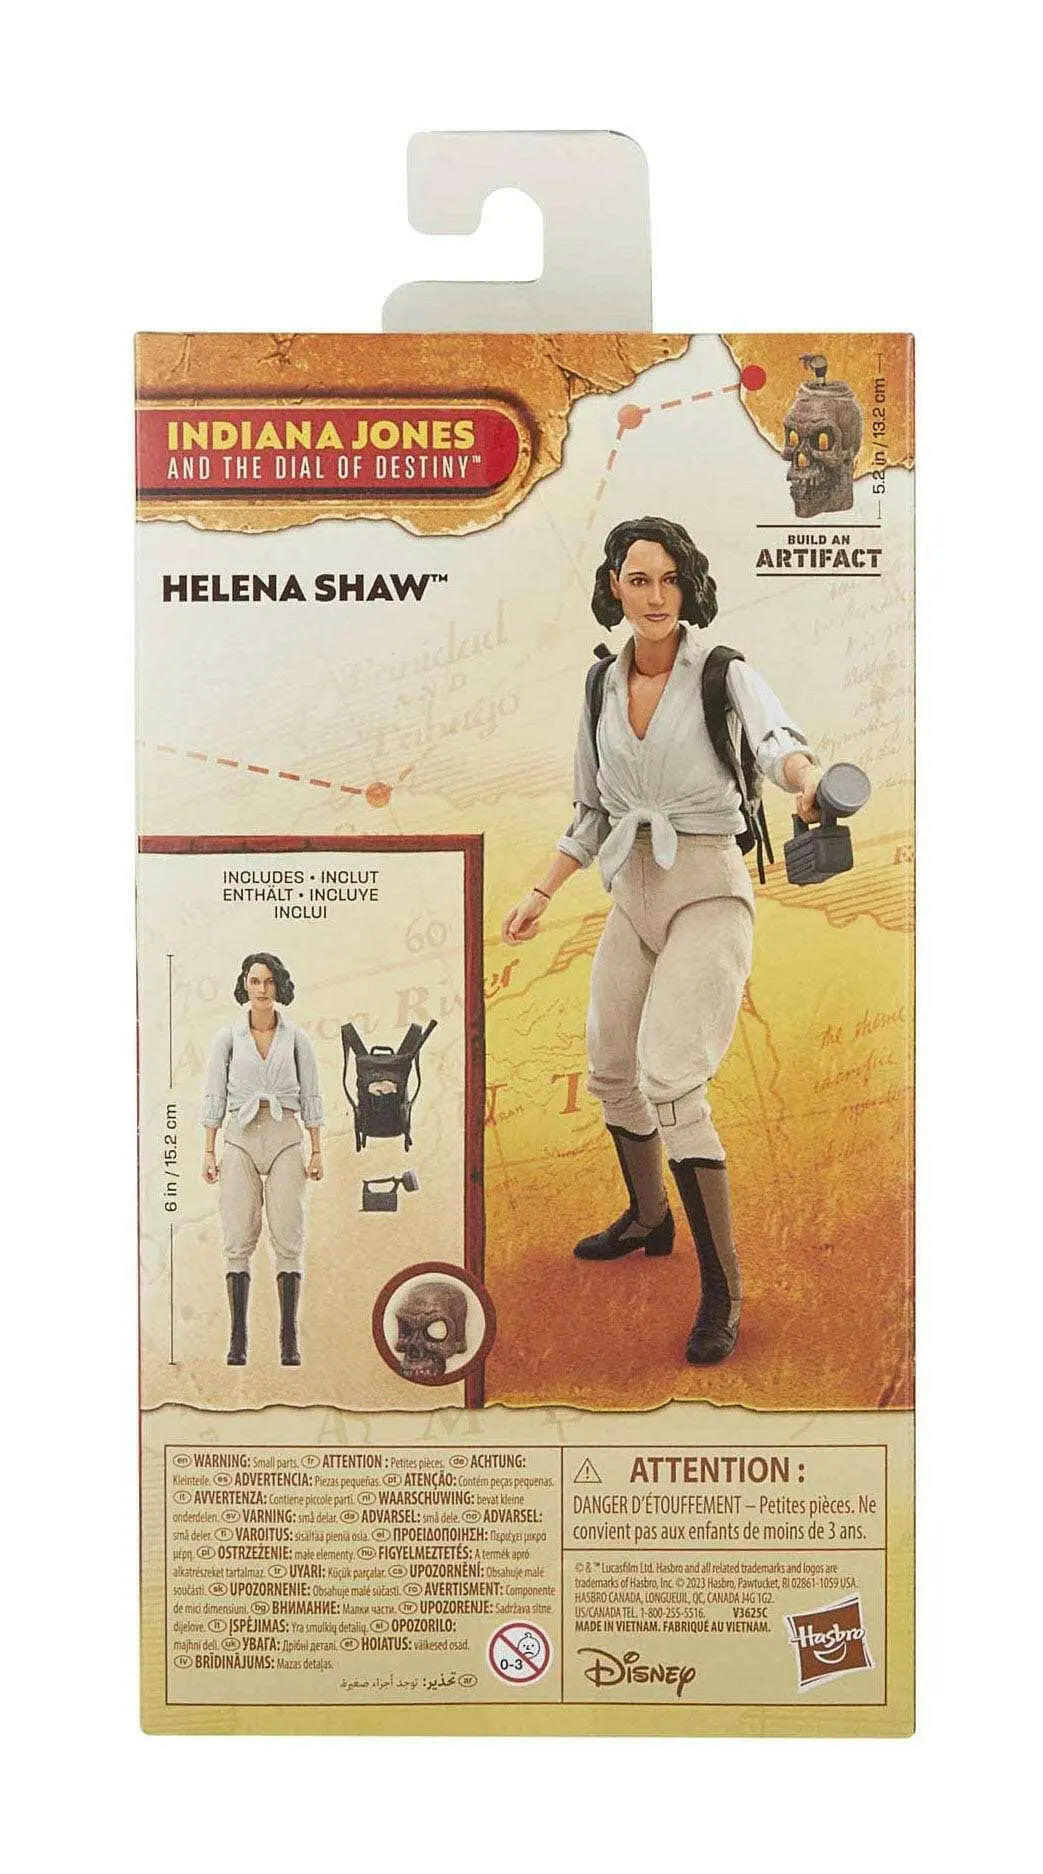 Indiana Jones Adventure Series Actionfigur Helena Shaw (Indiana Jones und das Rad des Schicksals) 15cm - Toy-Storage